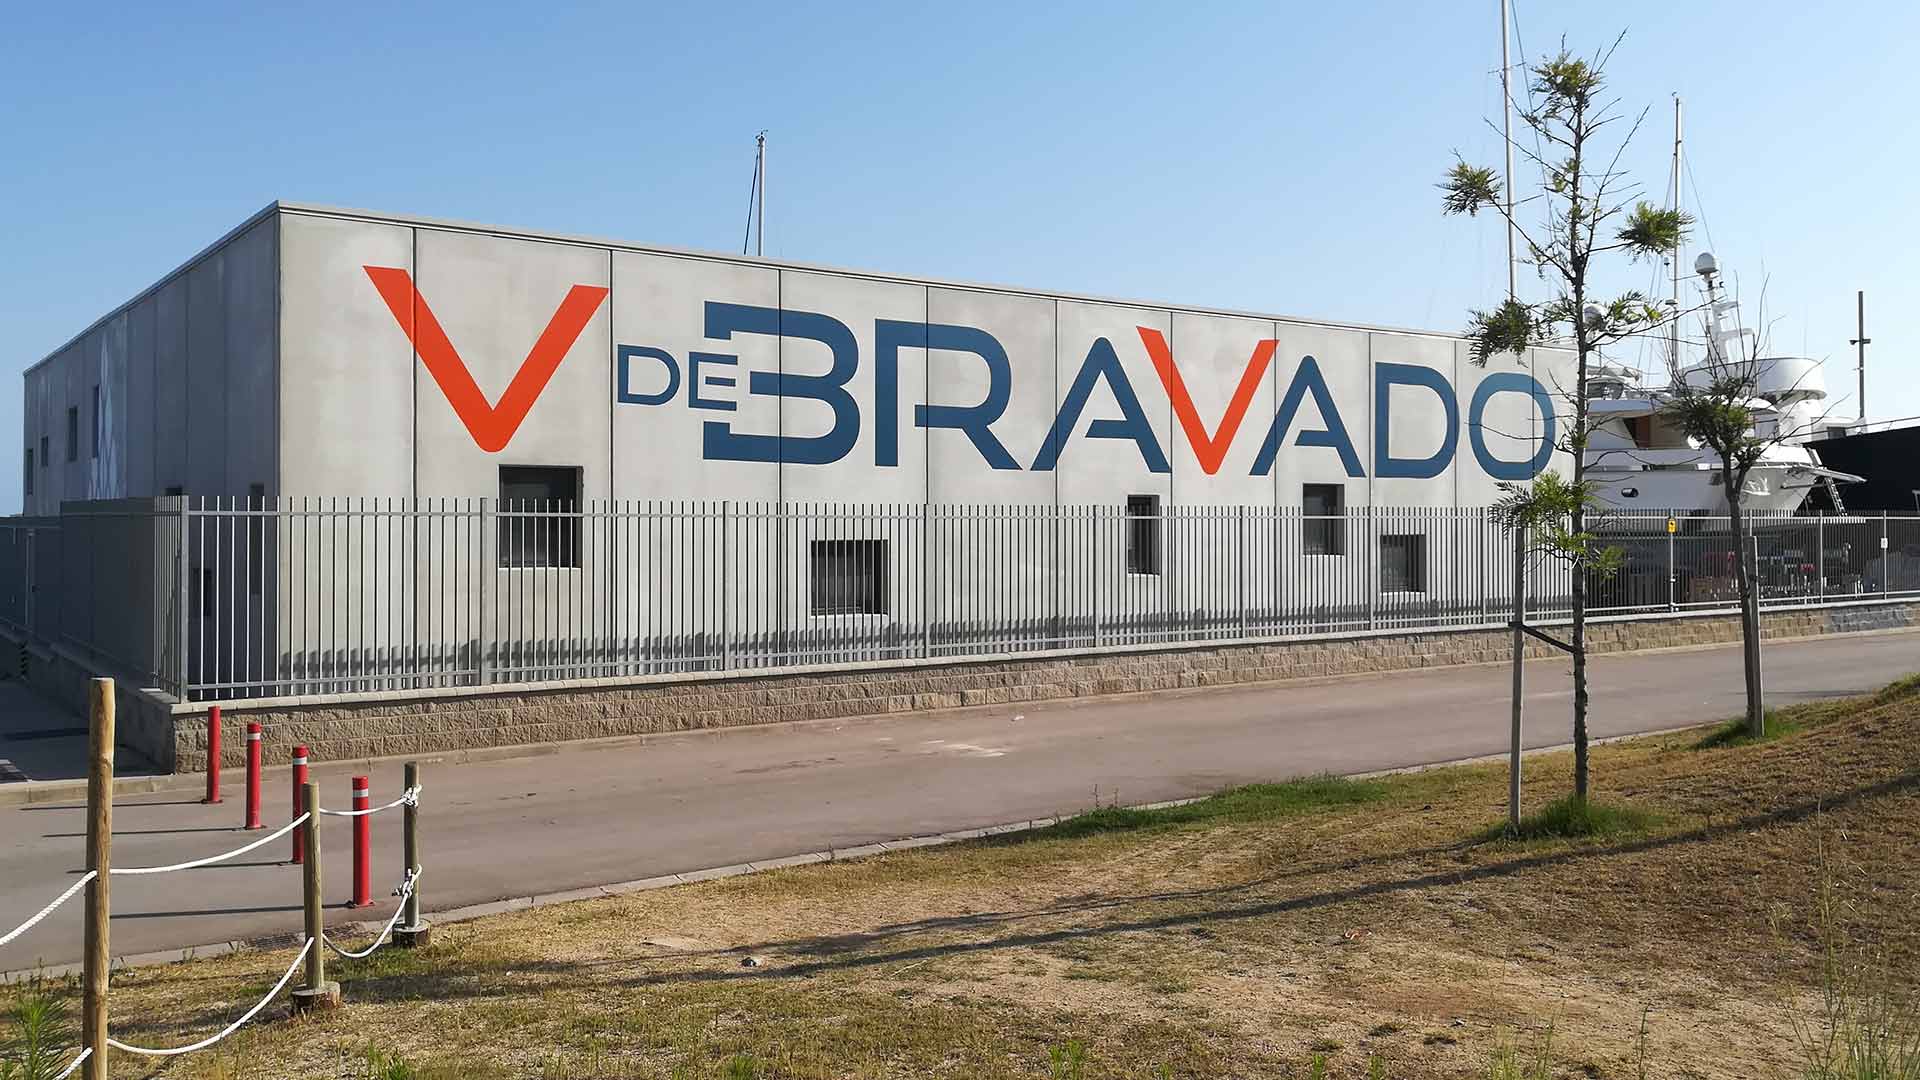 Nave industrial prefabricada para V de Bravado, en el puerto deportivo de Premià de Mar